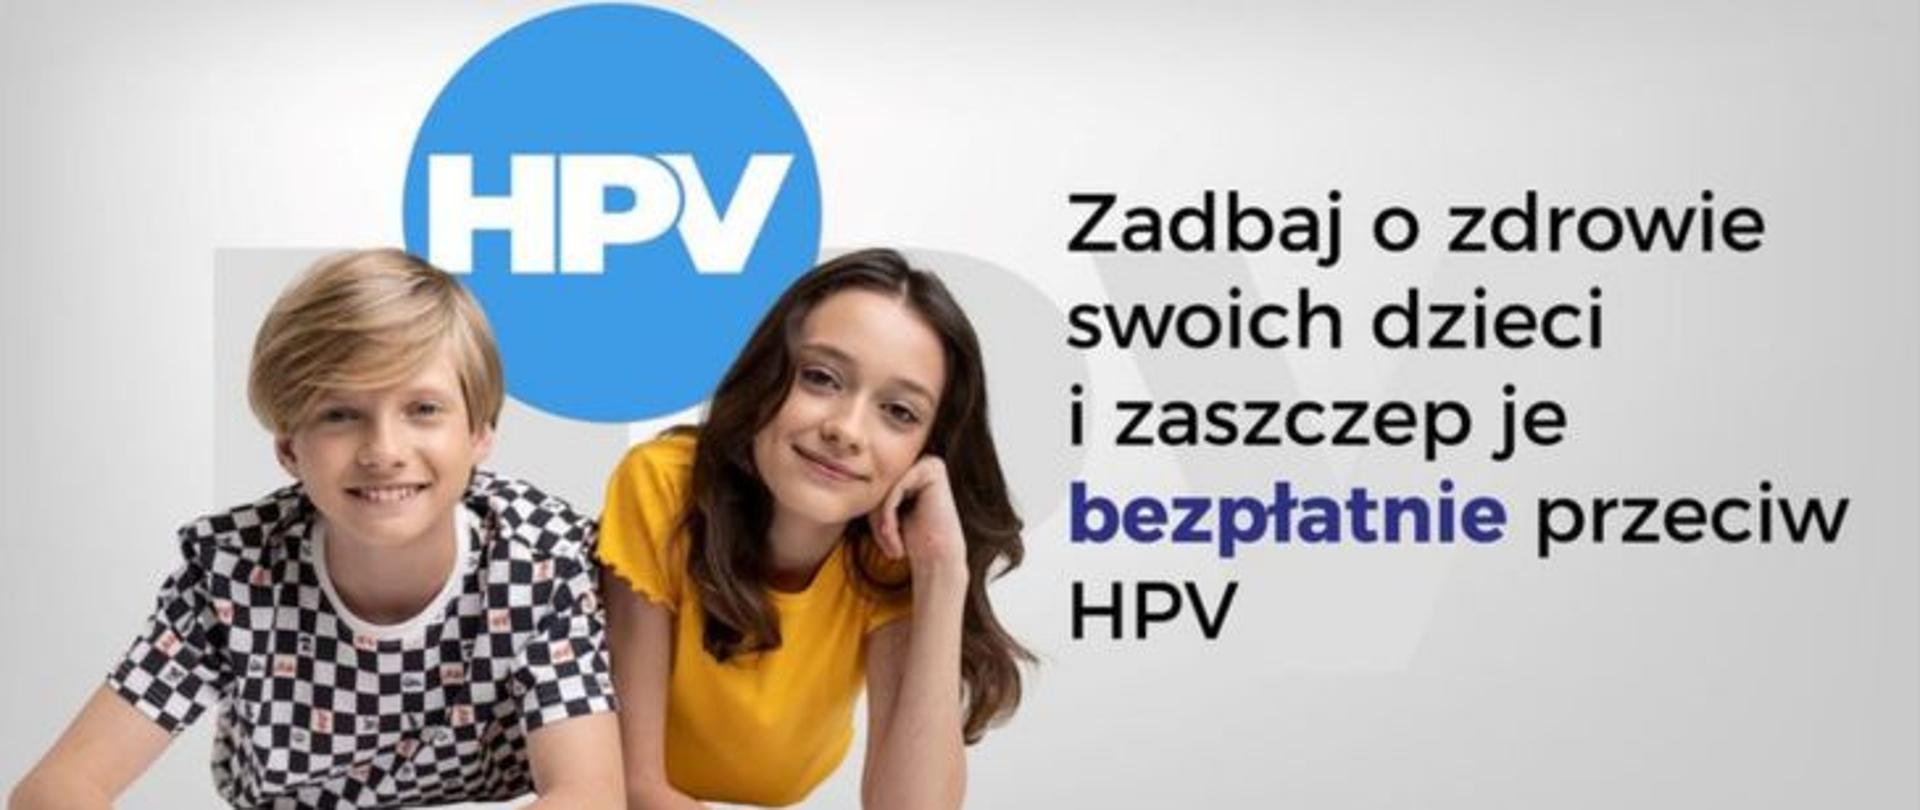 Po lewej dwoje uśmiechniętych nastolatków, pomiędzy ich głowami w niebieskim kole jasny napis HPV, po ich prawej ciemny napis Zadbaj o zdrowie swoich dzieci i zaszczep je bezpłatnie przeciw HPV.